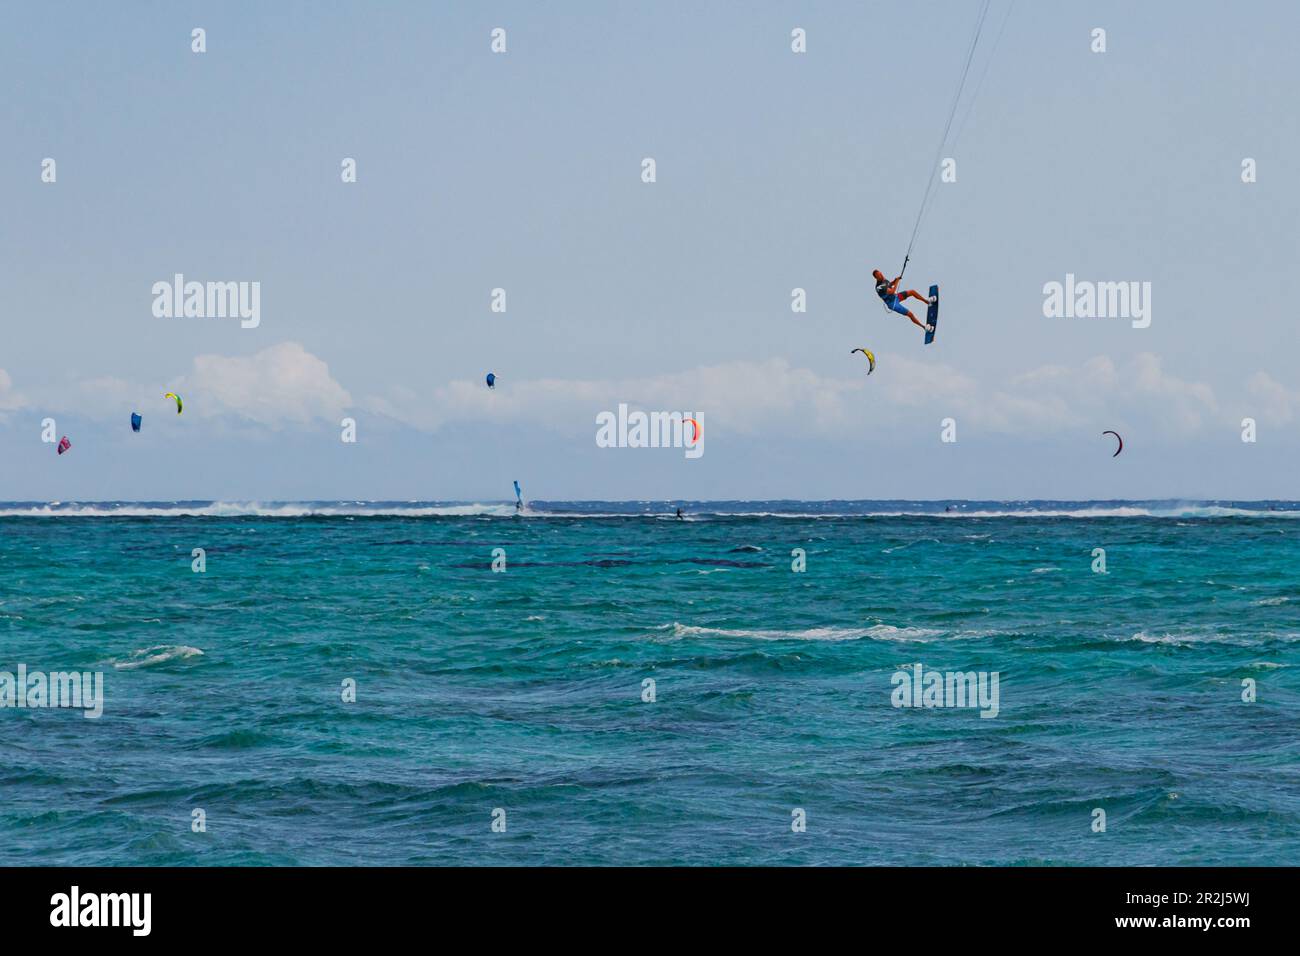 Un kitesurfer en vol bien au-dessus de la mer, le Morne, Maurice, Océan Indien Banque D'Images